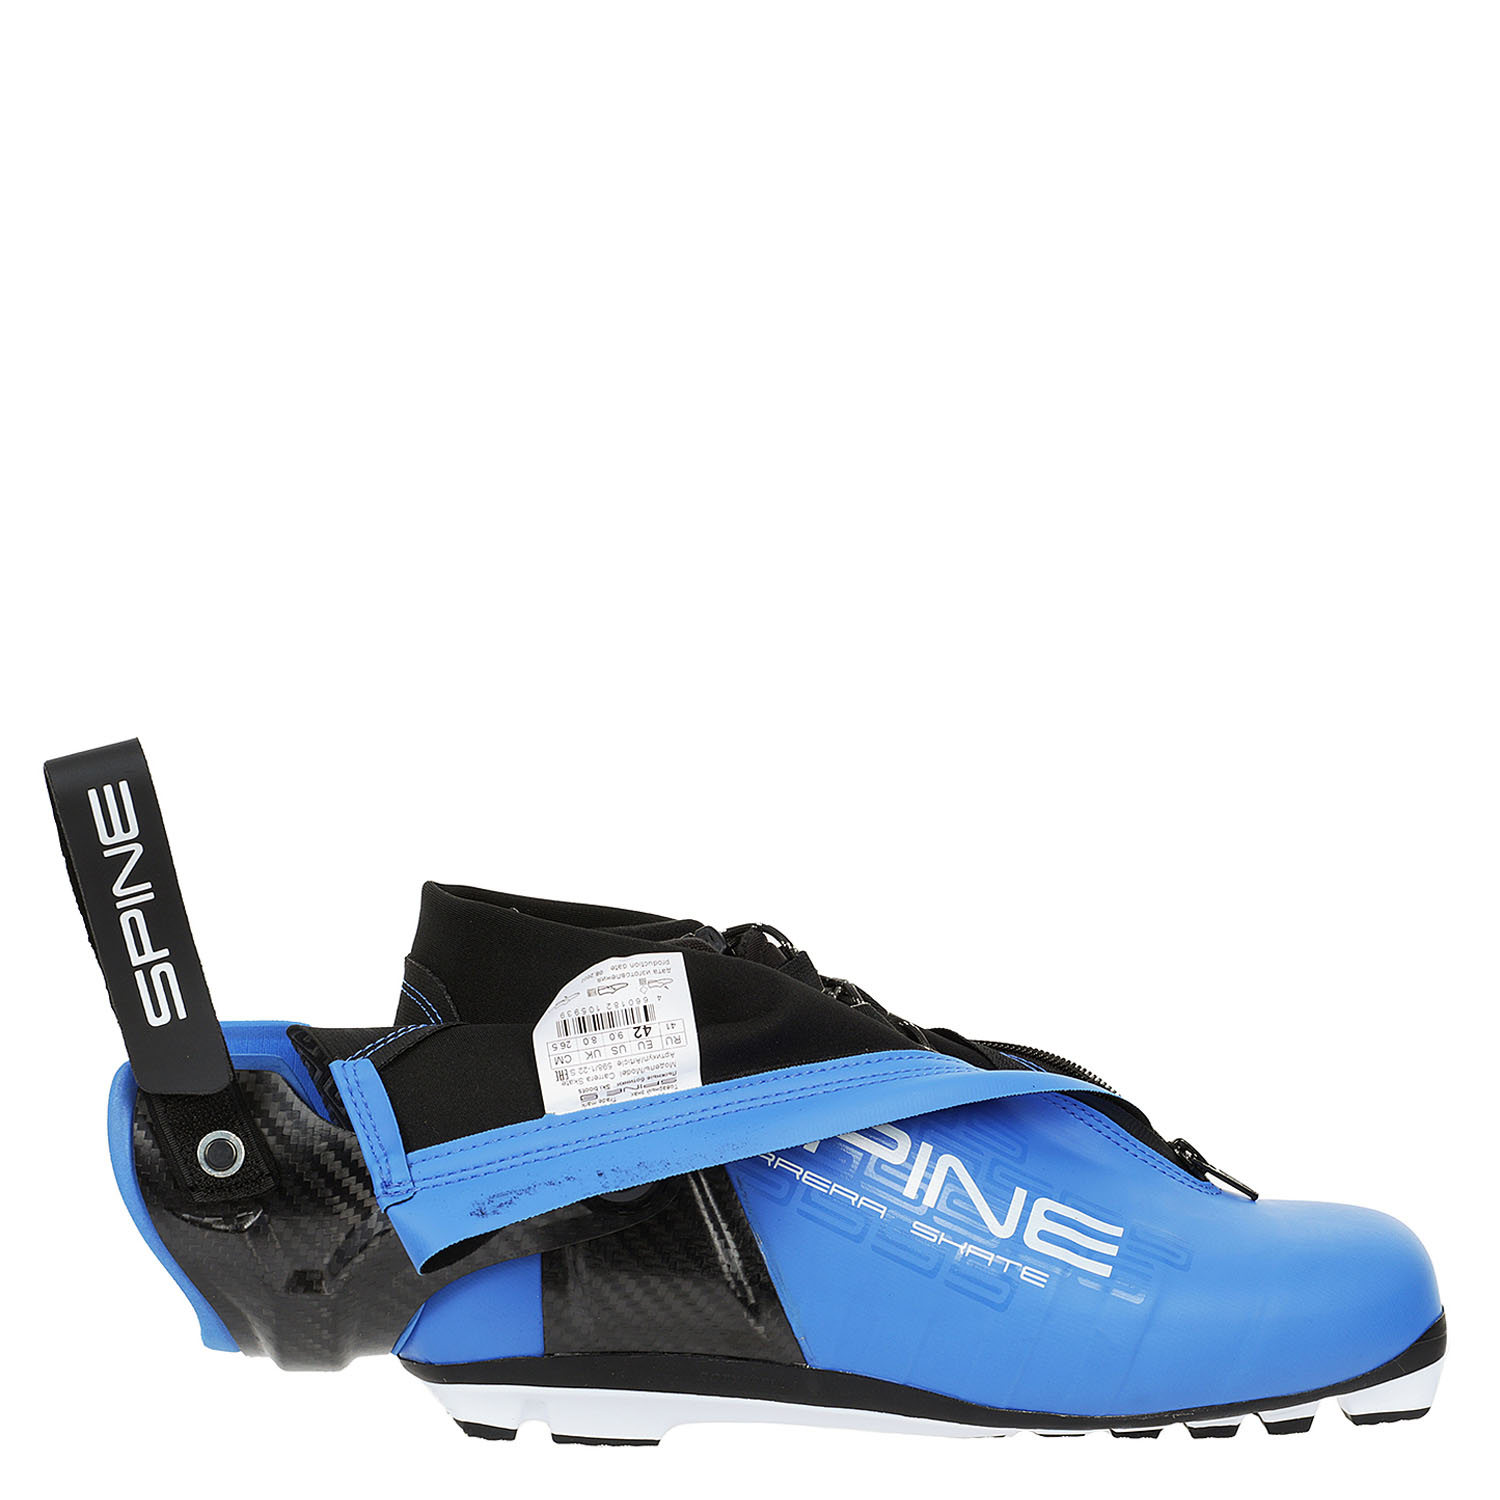 Лыжные ботинки SPINE Carrera Skate – купить по цене 39990 руб, магазин«Кант»